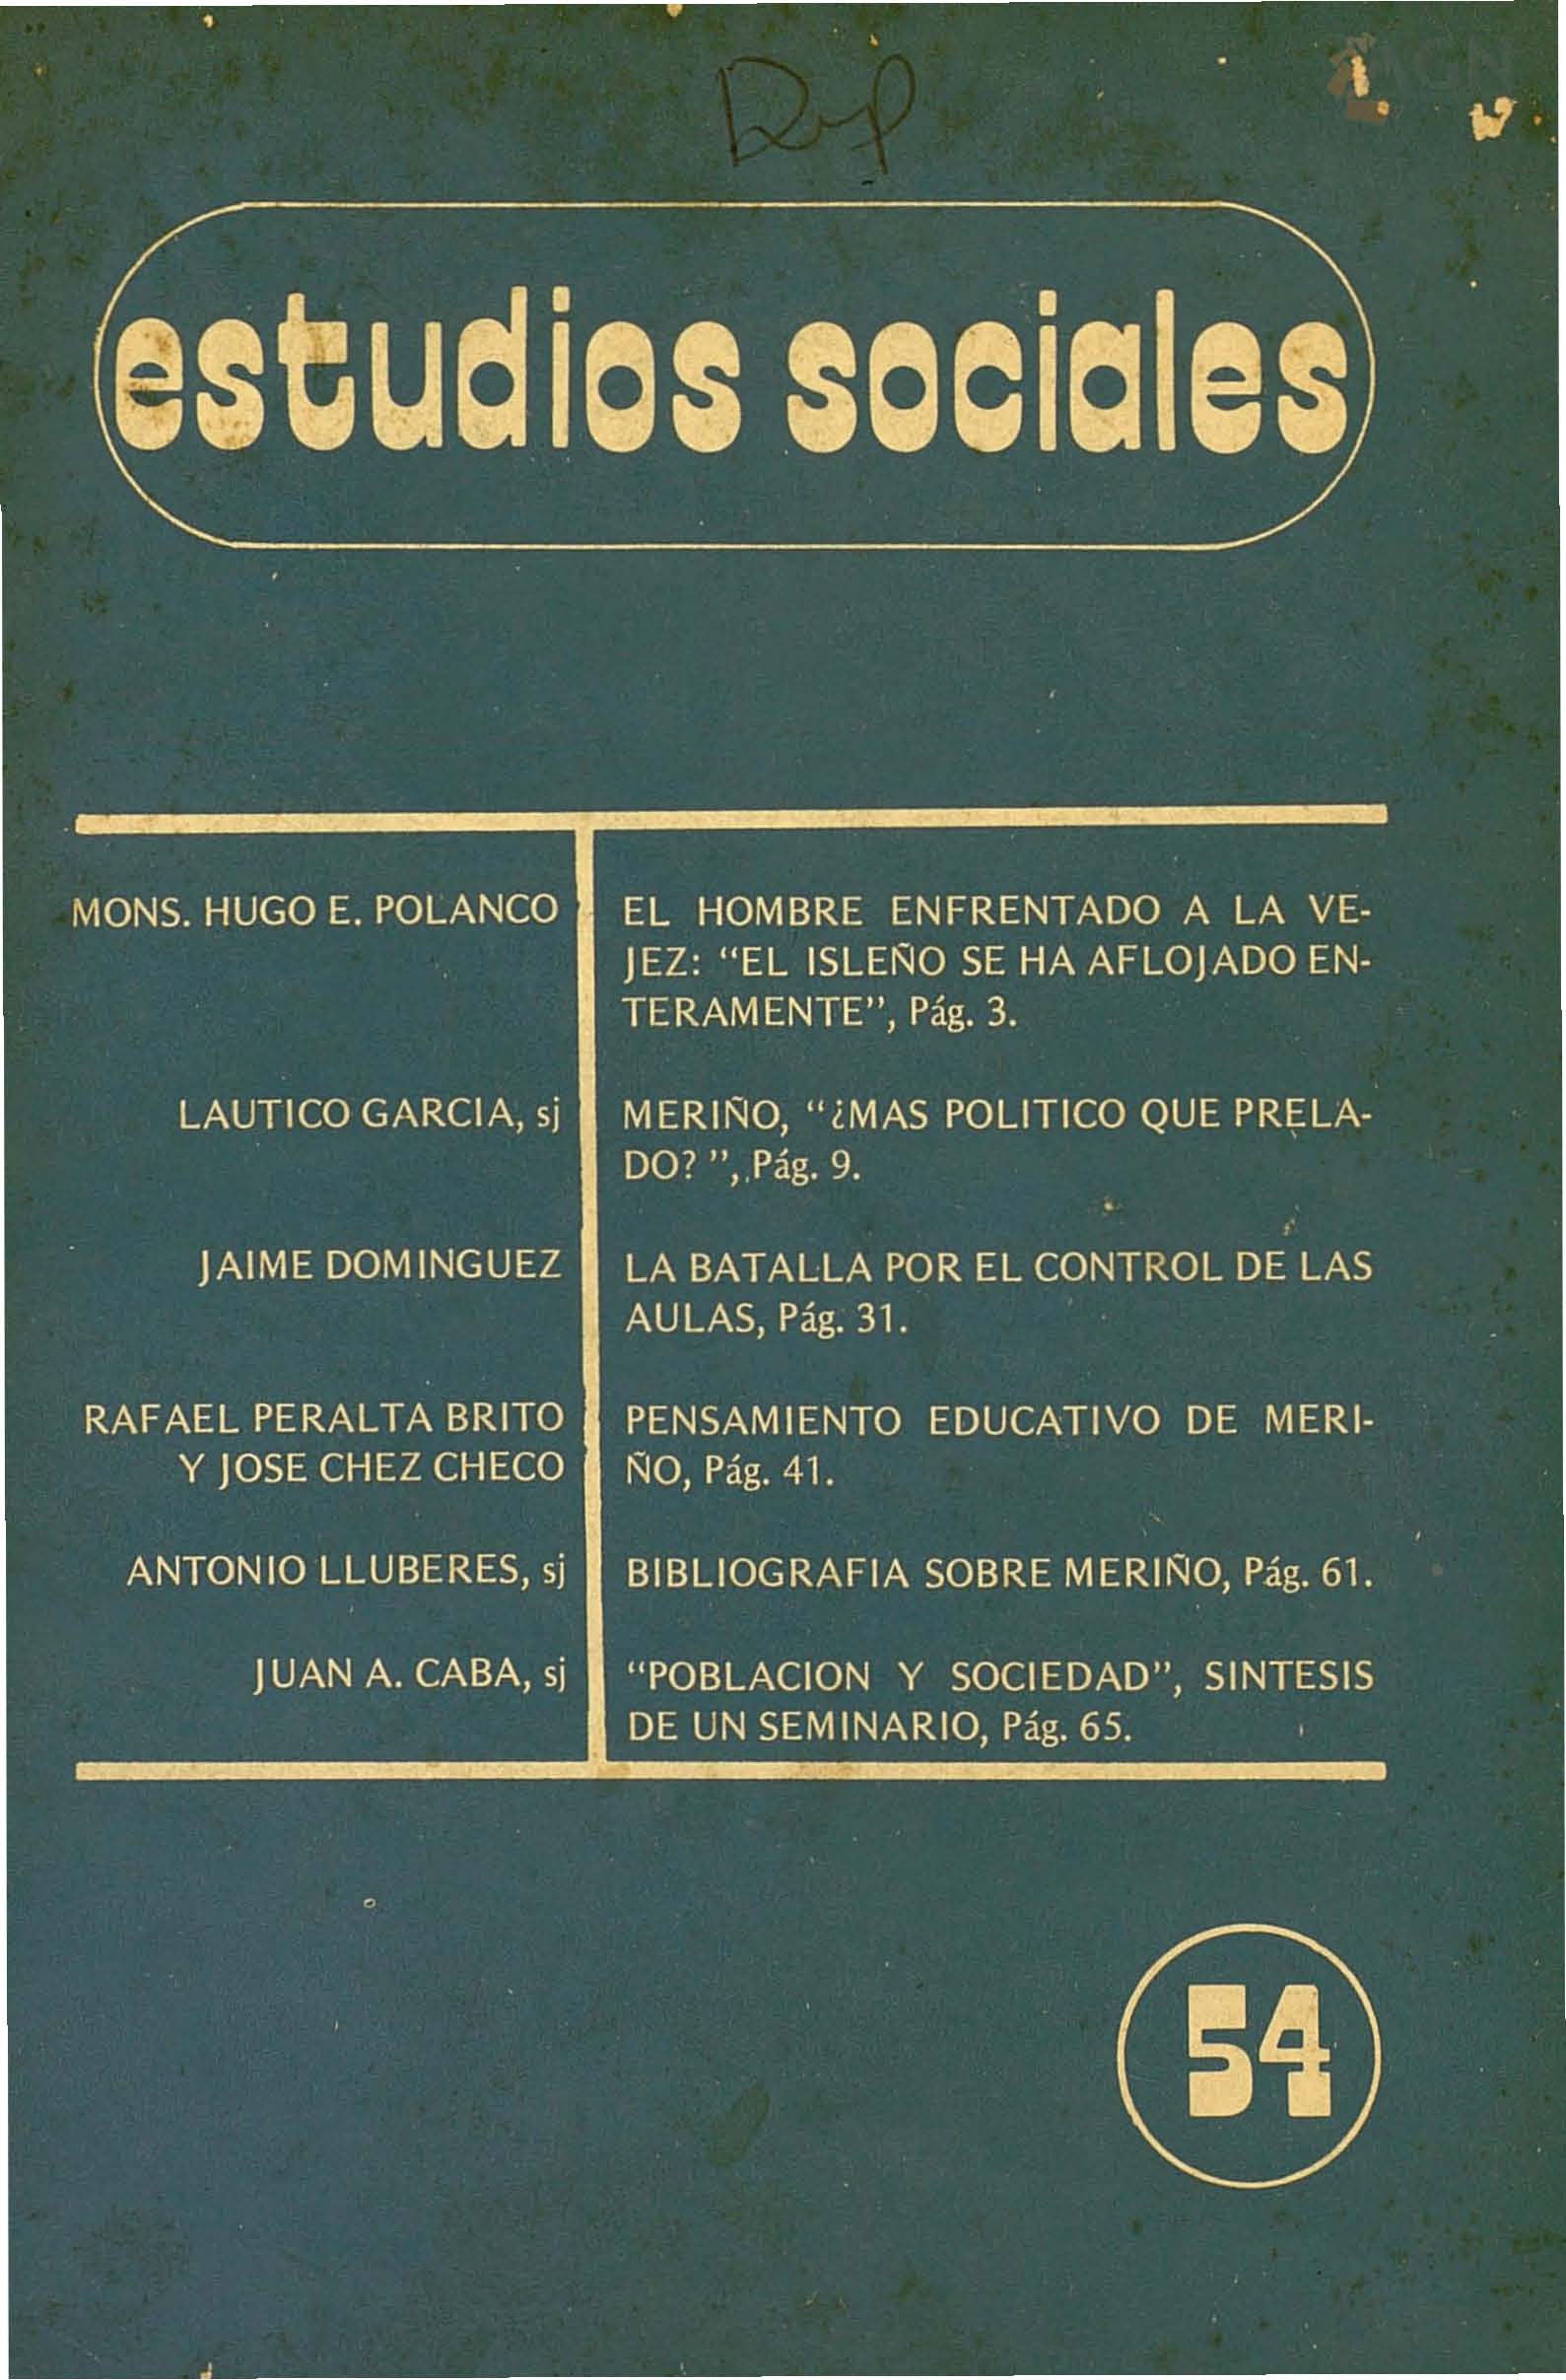 						Ver Vol. 16 Núm. 54 (1983): Fernando Arturo de Meriño (1833-1906)
					